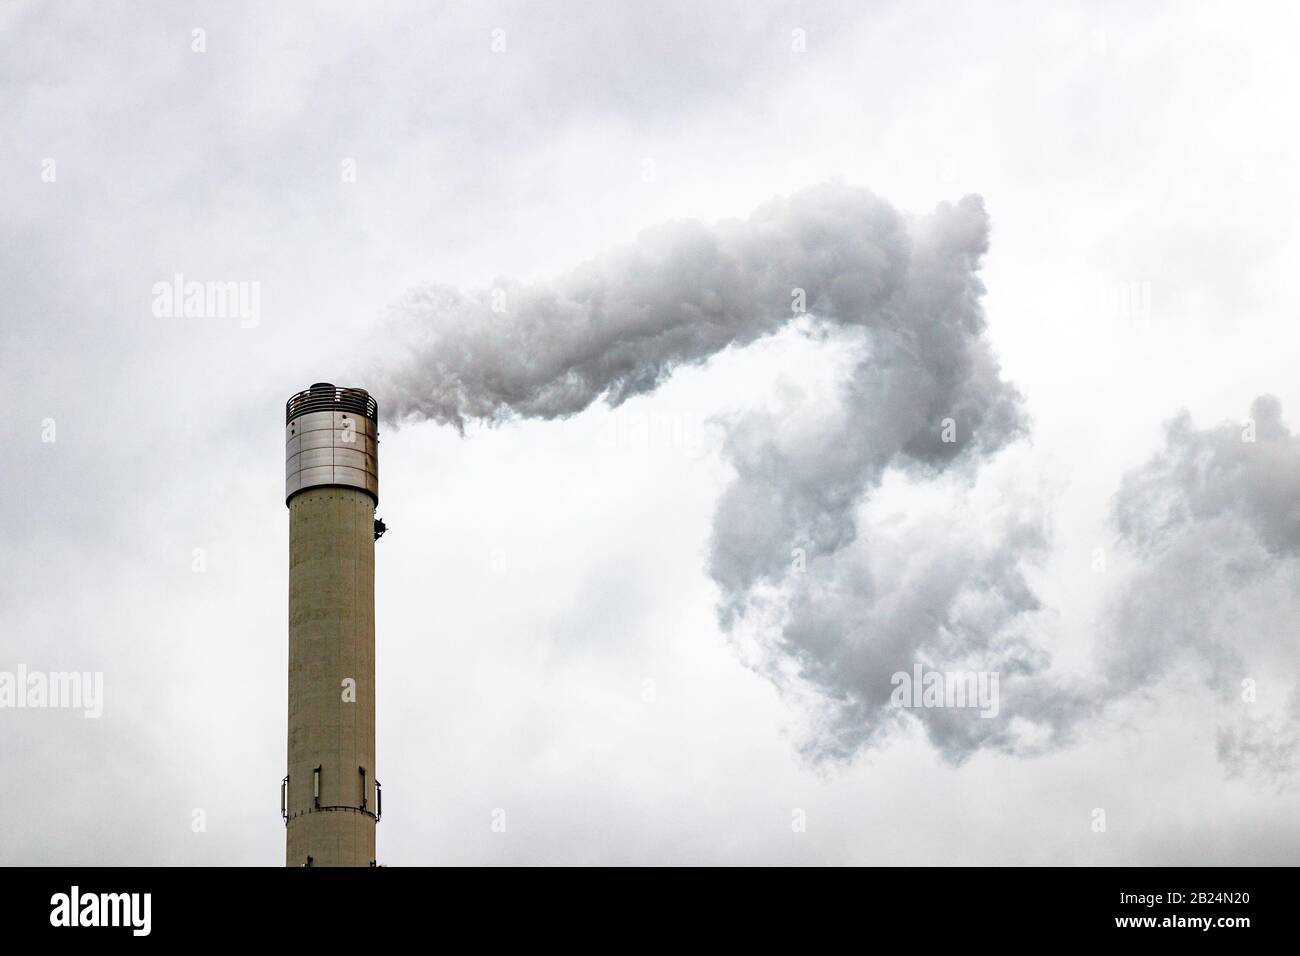 Hoher Schornstein, der Gase in die Atmosphäre abgibt und Luftverschmutzung verursacht. Grauer, bewölkter Himmel. Stockfoto